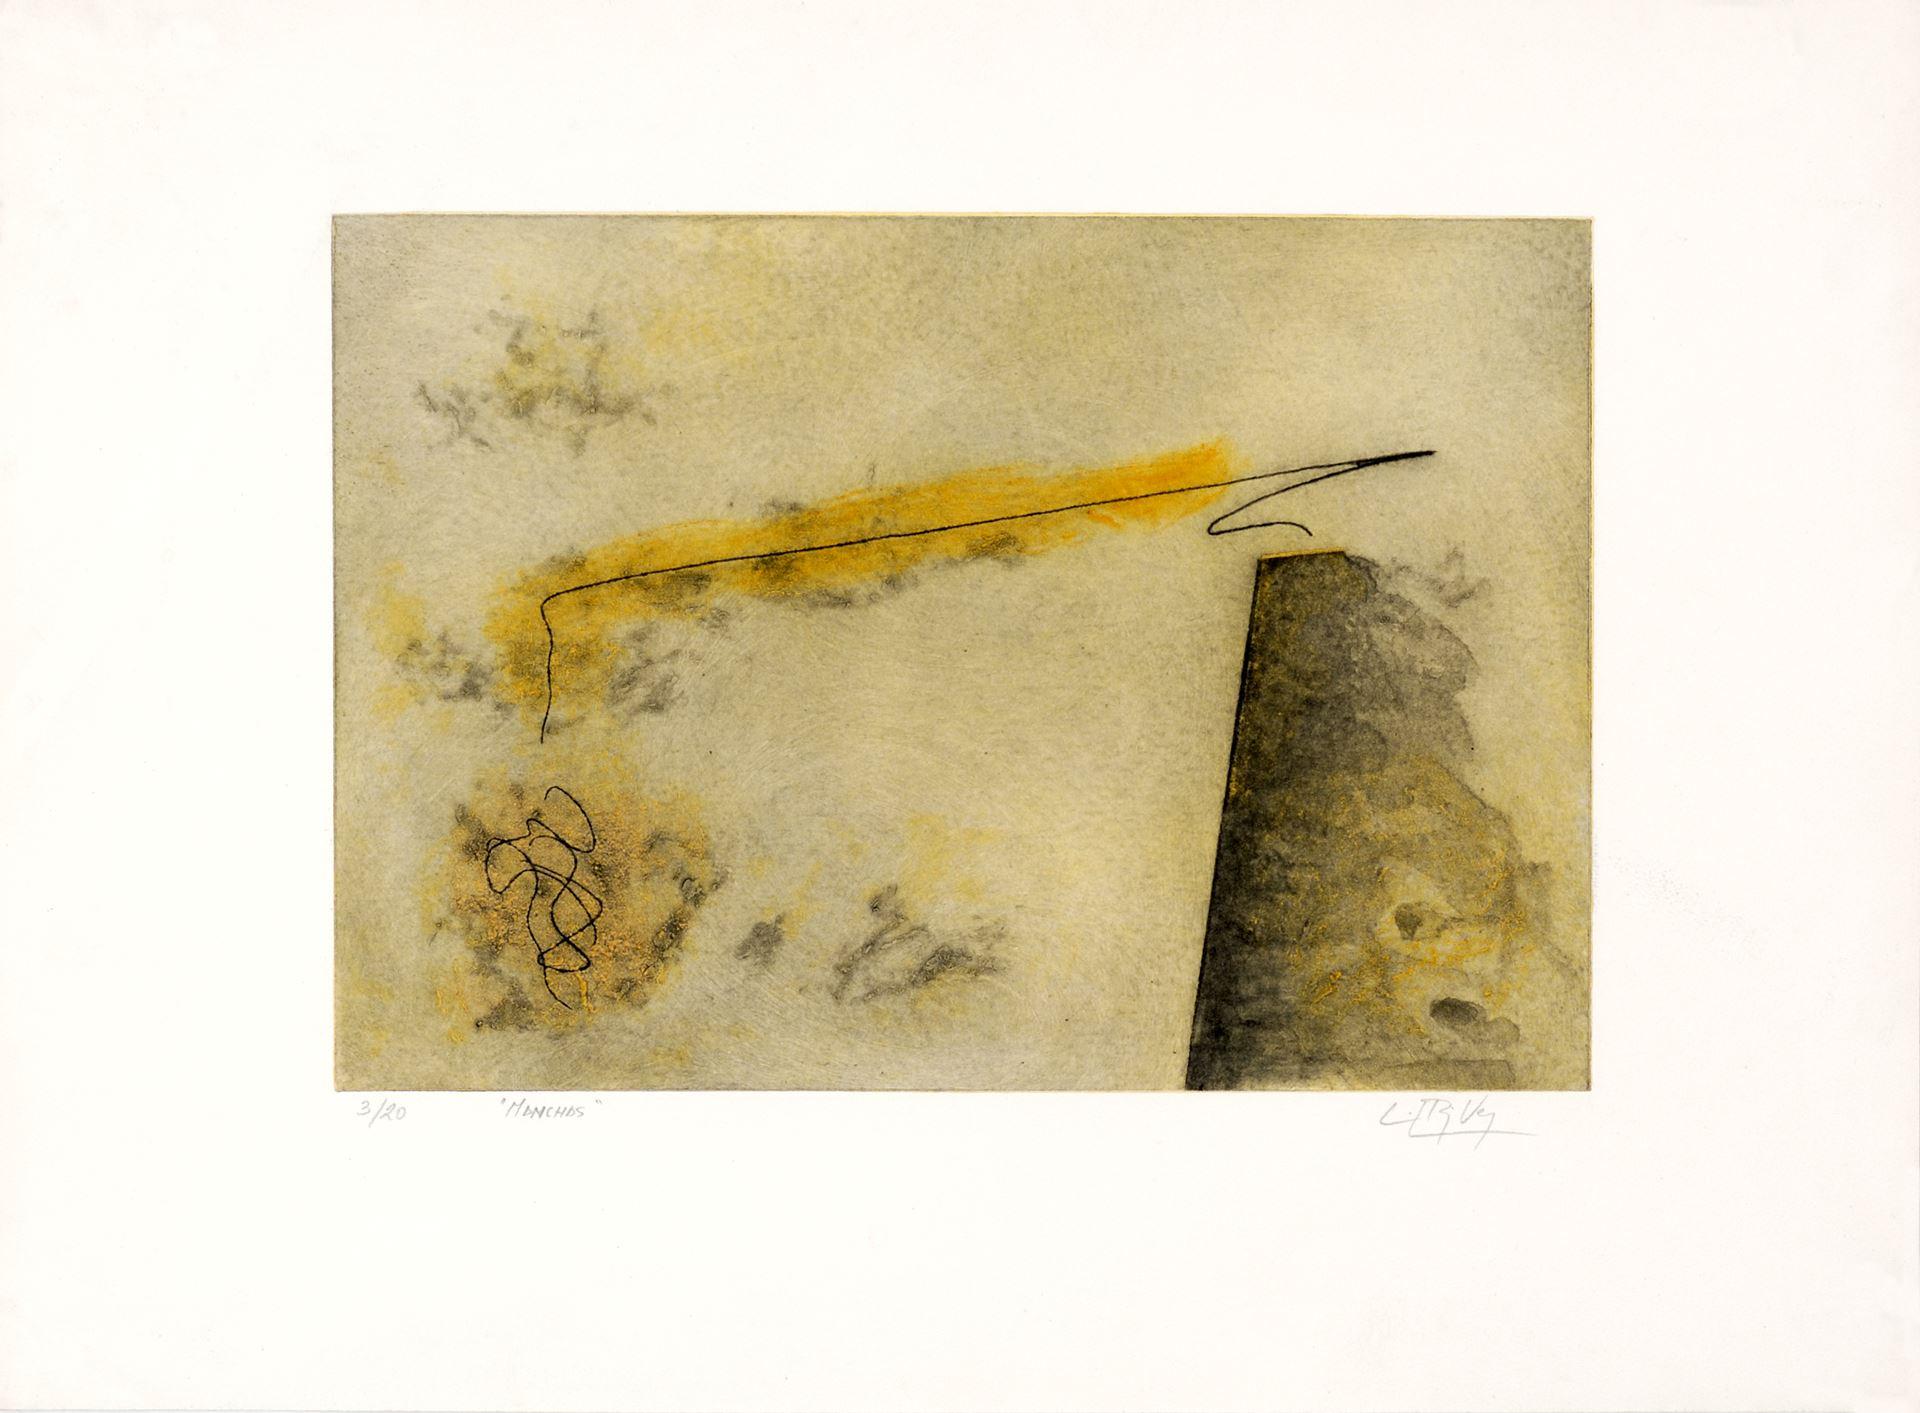 Luis Pérez Vega (Spanien, 1976)
Manchas", 1995
Gravur auf Papier
21,3 x 28,8 Zoll (54 x 73 cm)
Auflage von 20 Stück
ID: PER1275-001-020
Vom Autor handsigniert